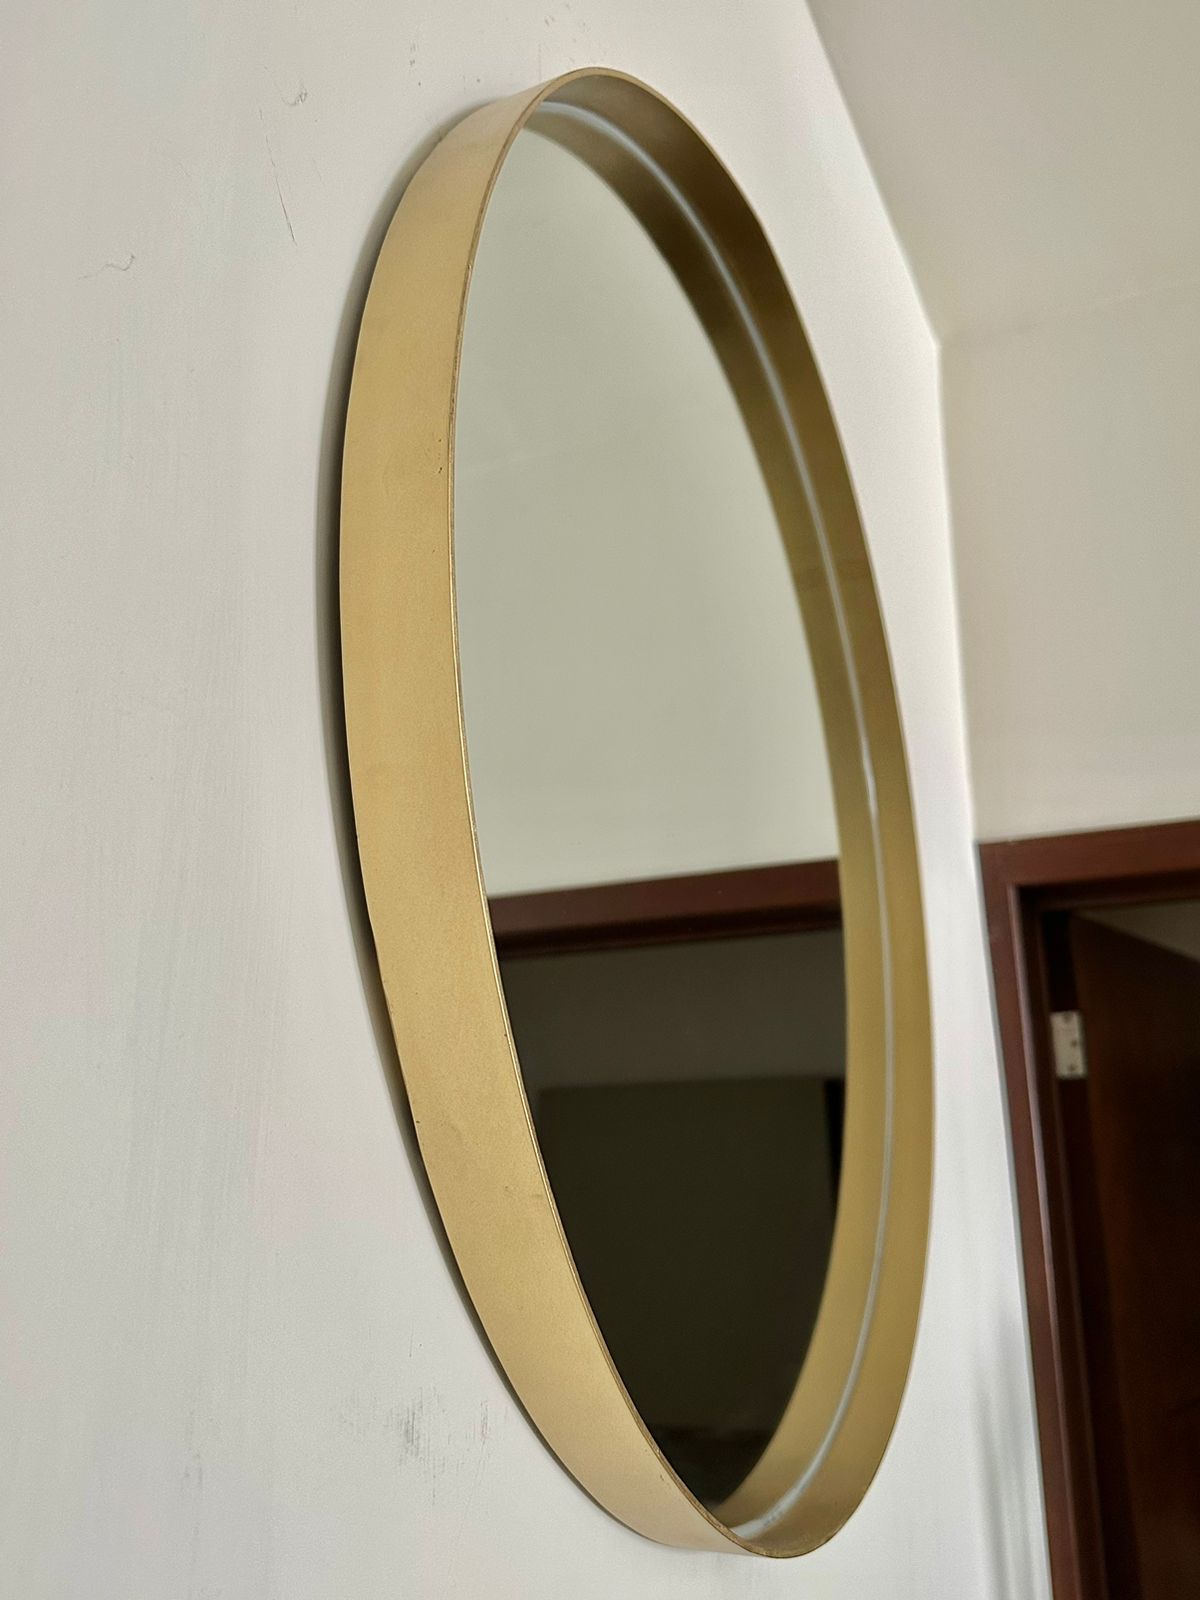 Espejo circular marco dorado - Cantia